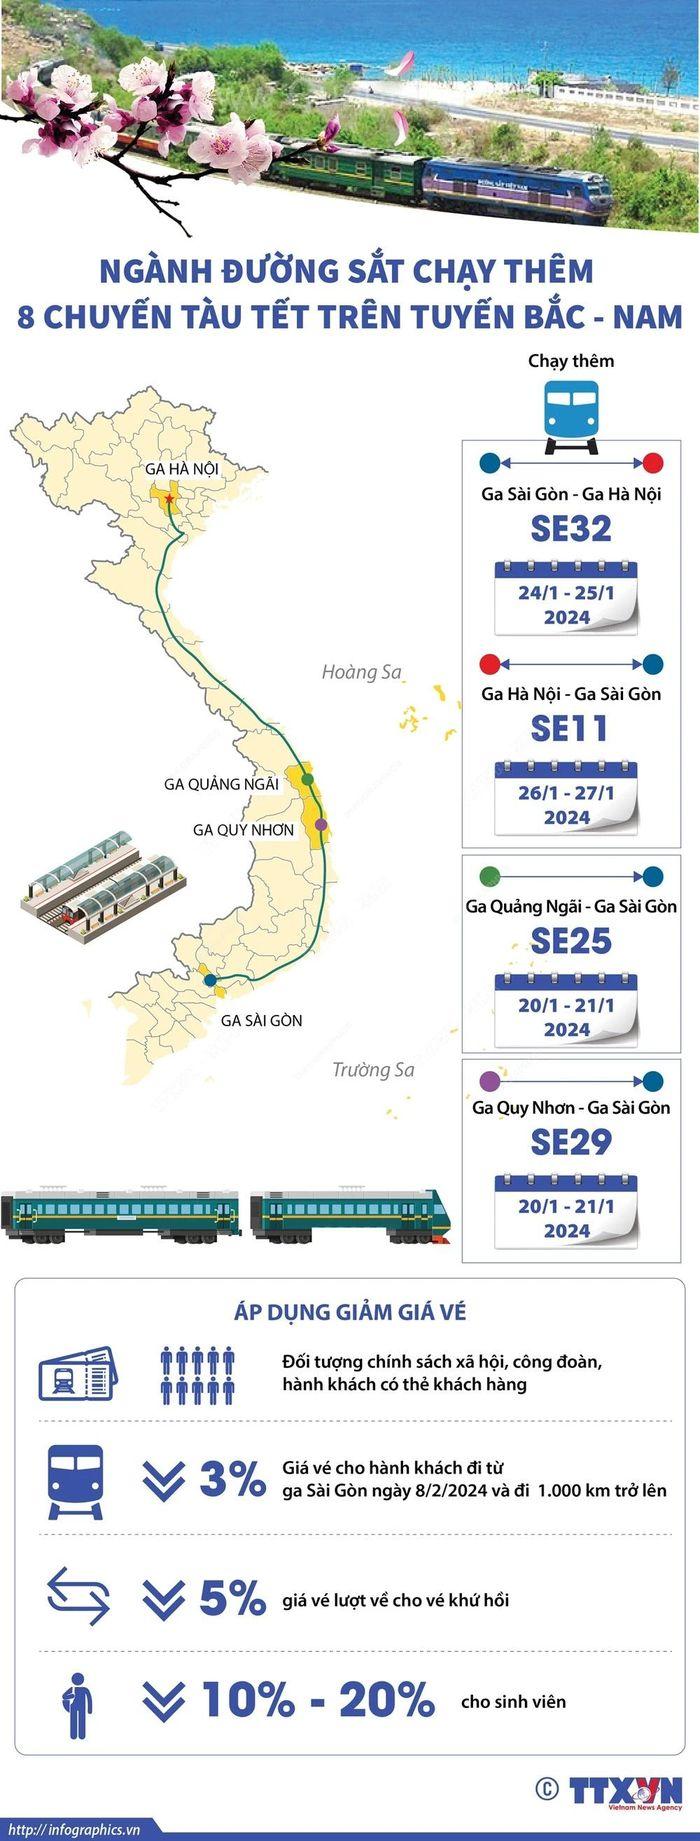 Nganh duong sat chay them 8 chuyen tau Tet min - Ngành đường sắt chạy thêm 8 chuyến tàu Tết trên tuyến Bắc-Nam